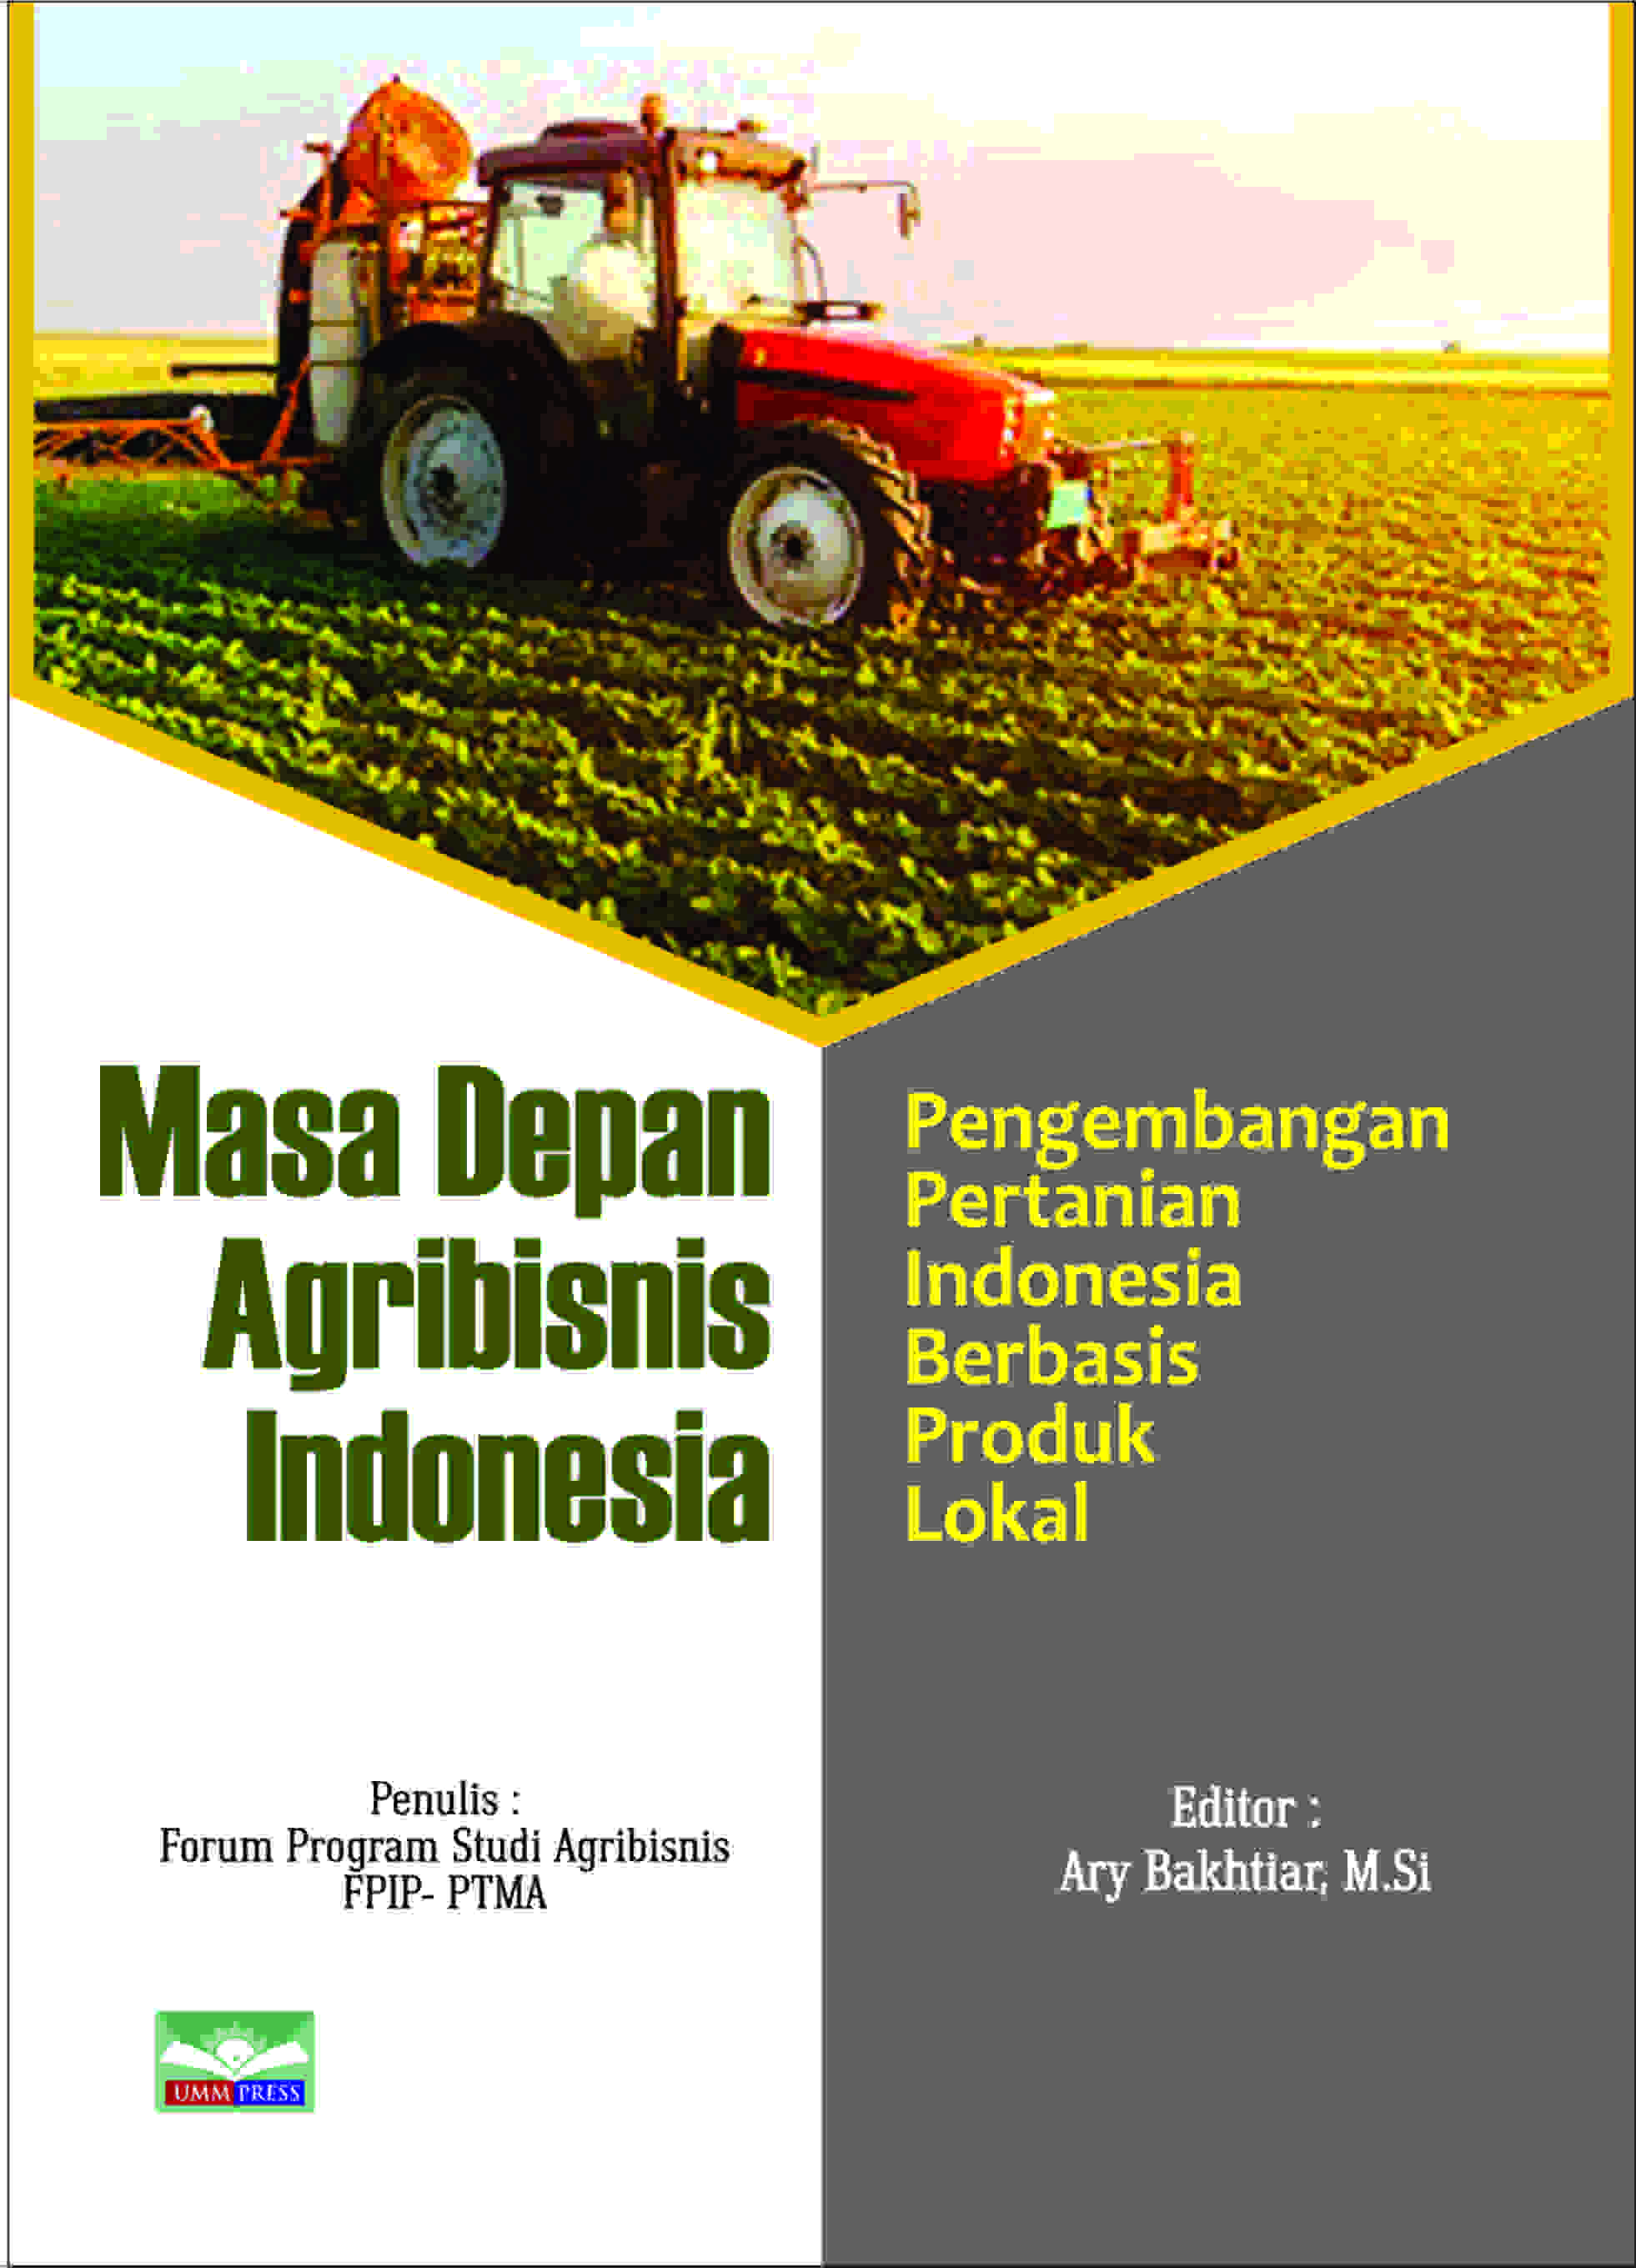 MASA DEPAN AGRIBISNIS INDONESIA: PENGEMBANGAN PERTANIAN INDONESIA BERBASIS PRODUK LOKAL